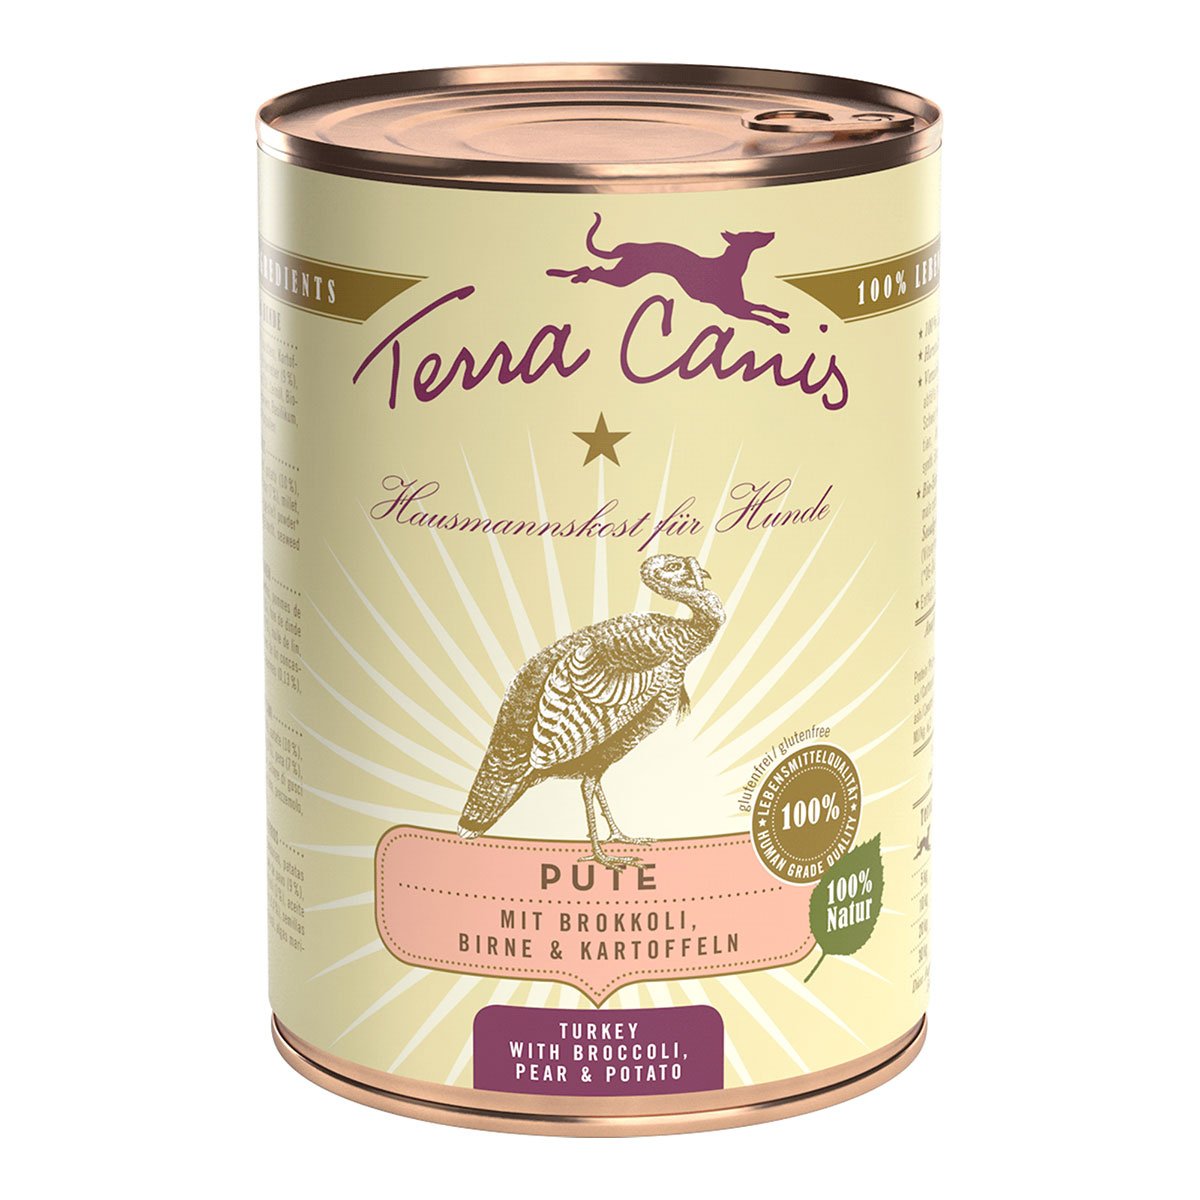 Terra Canis CLASSIC – Pute mit Brokkoli, Birne und Kartoffel 12x400g von Terra Canis